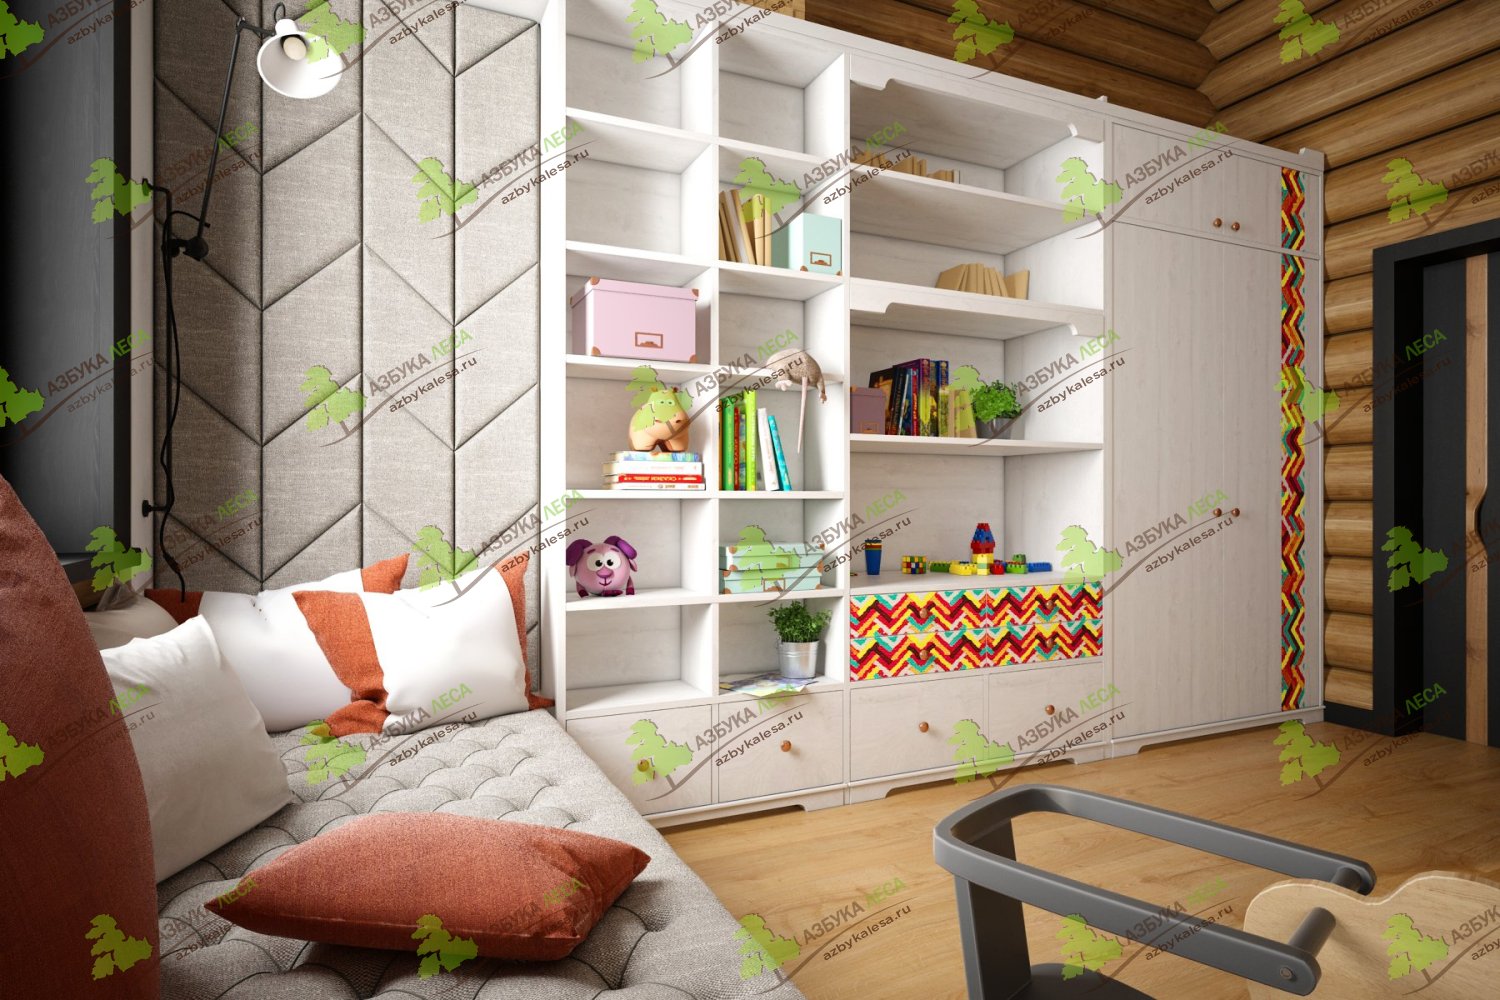 Дизайн детской спальни